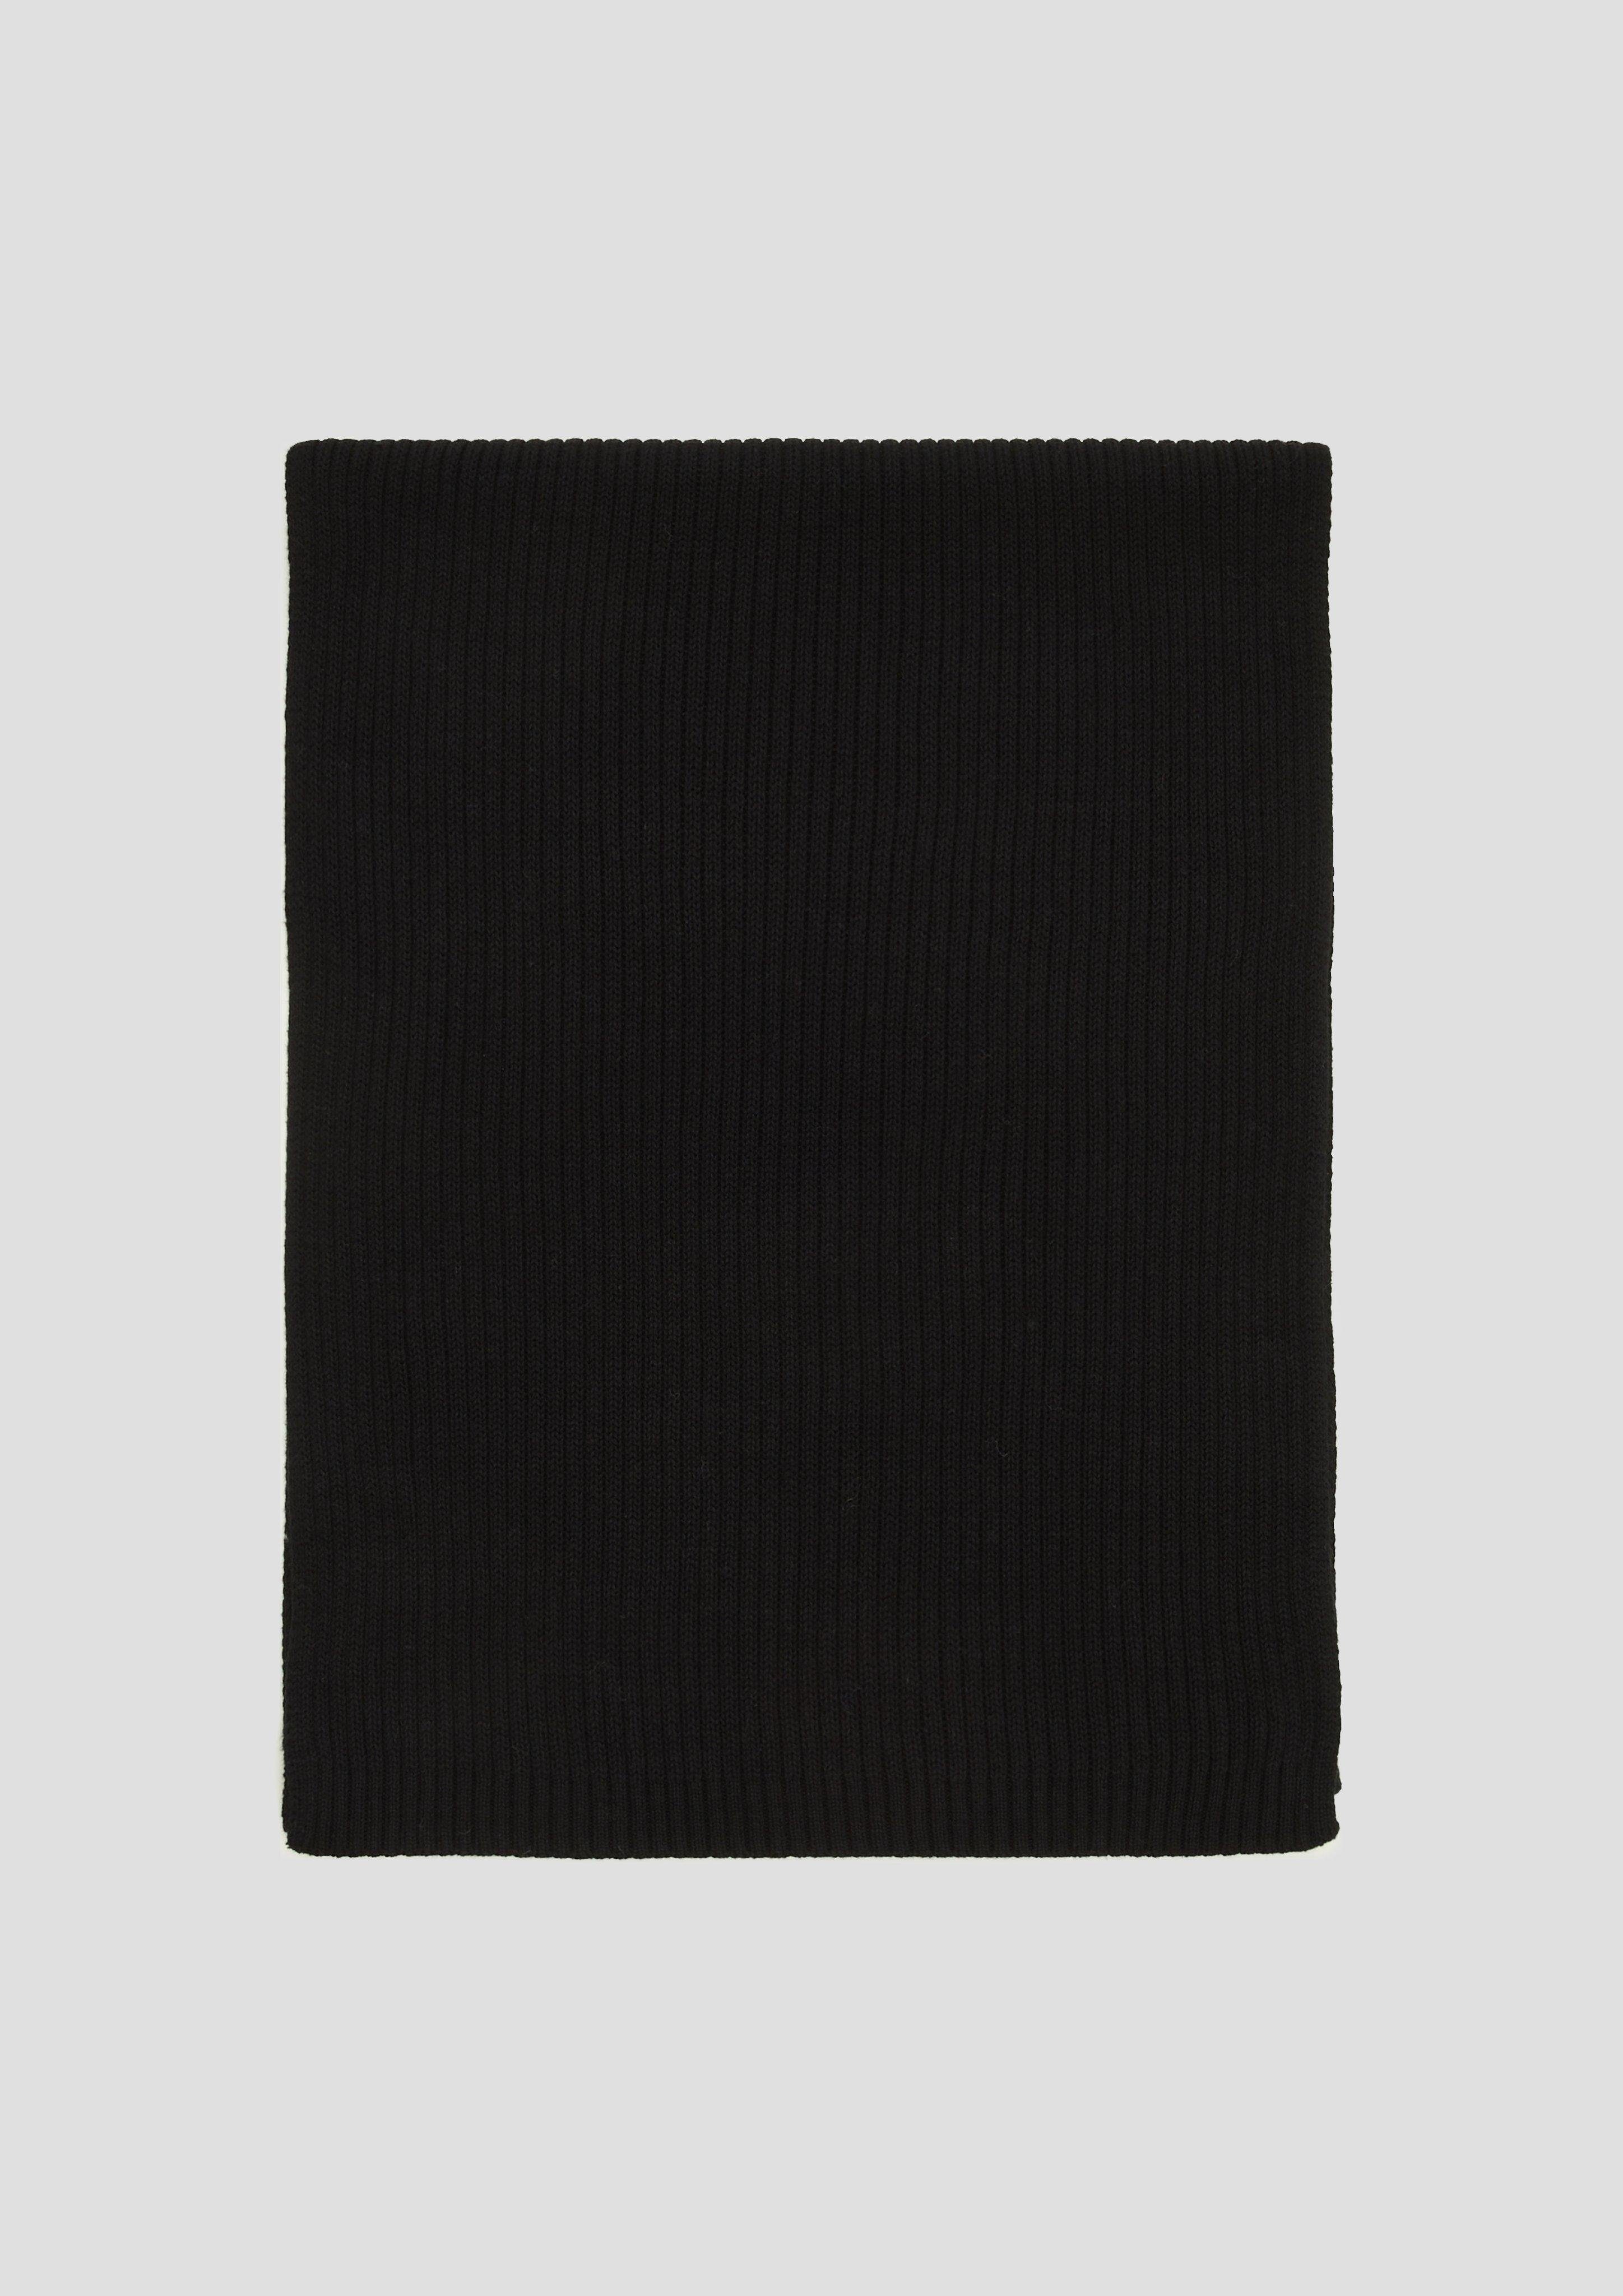 Strickschal Baumwolle schwarz aus Einstecktuch s.Oliver